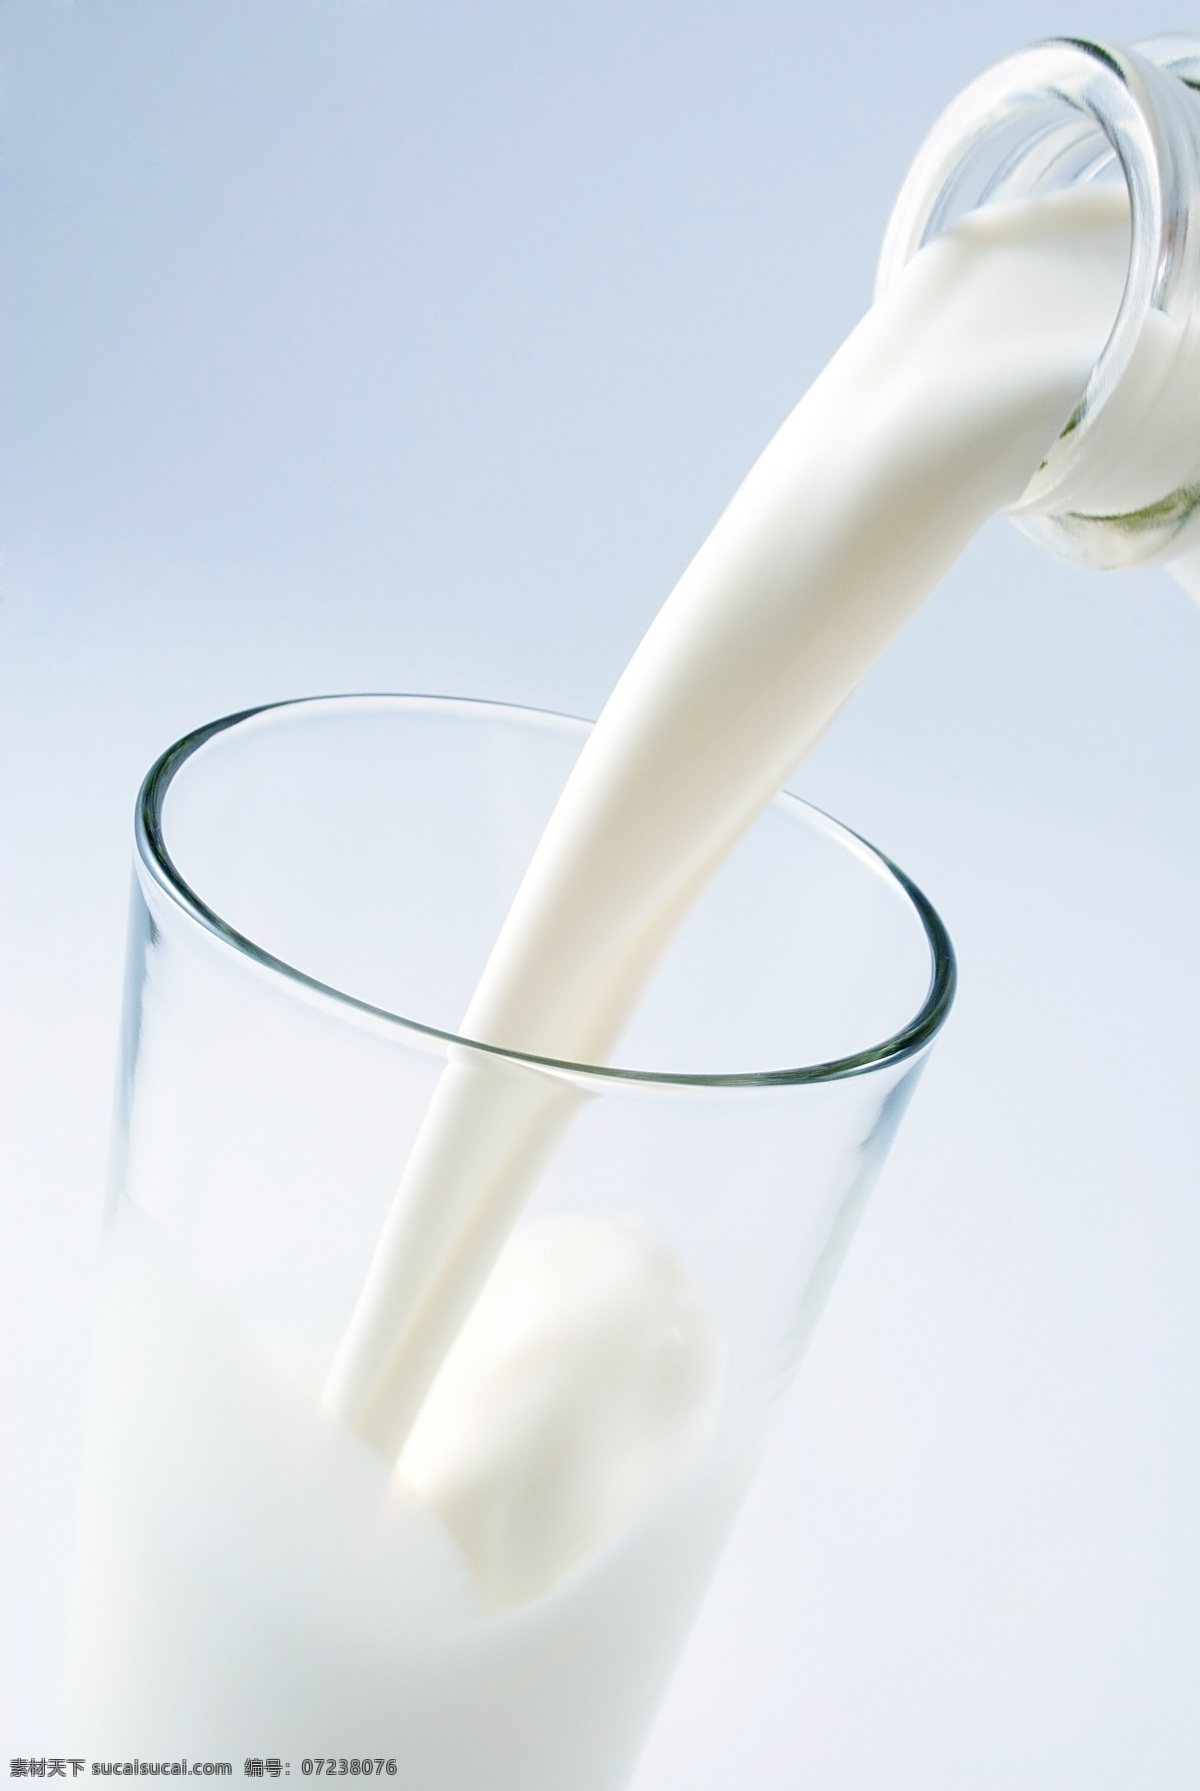 倒牛奶 牛奶 杯子 玻璃杯 容器 动感 营养美食 健康美食 美食主题 传统美食 酒水饮料 餐饮美食 白色